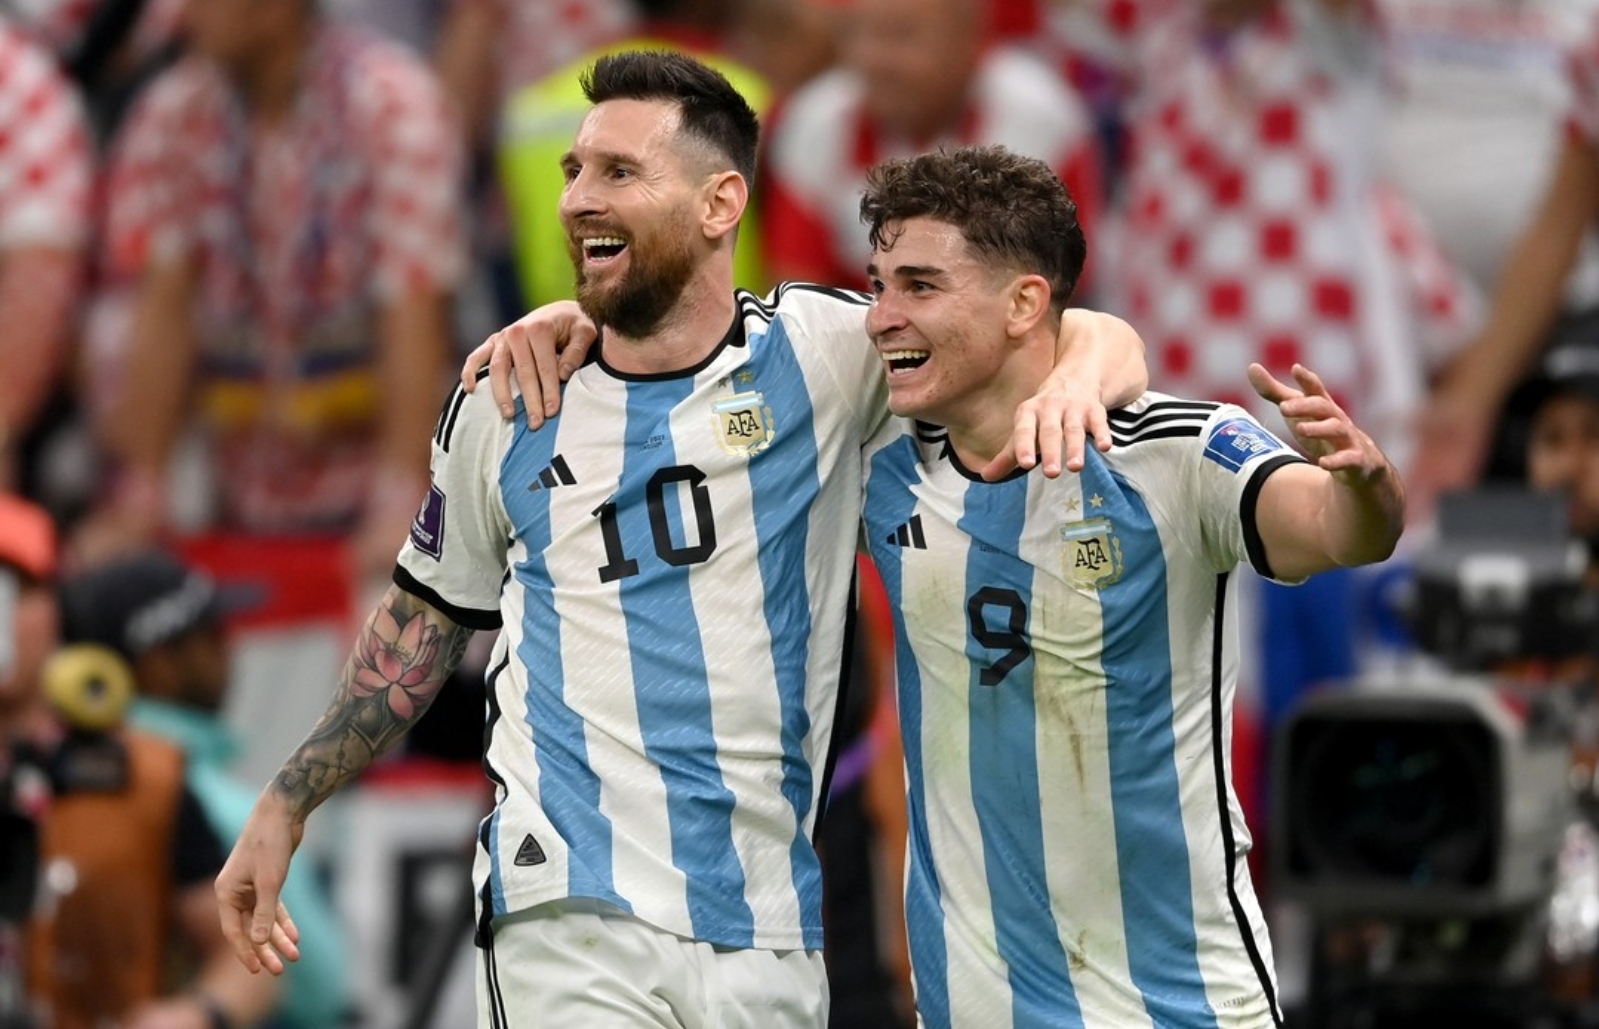 Hasil Pertandingan Argentina vs Kroasia, Babak 1 Skor 2-0